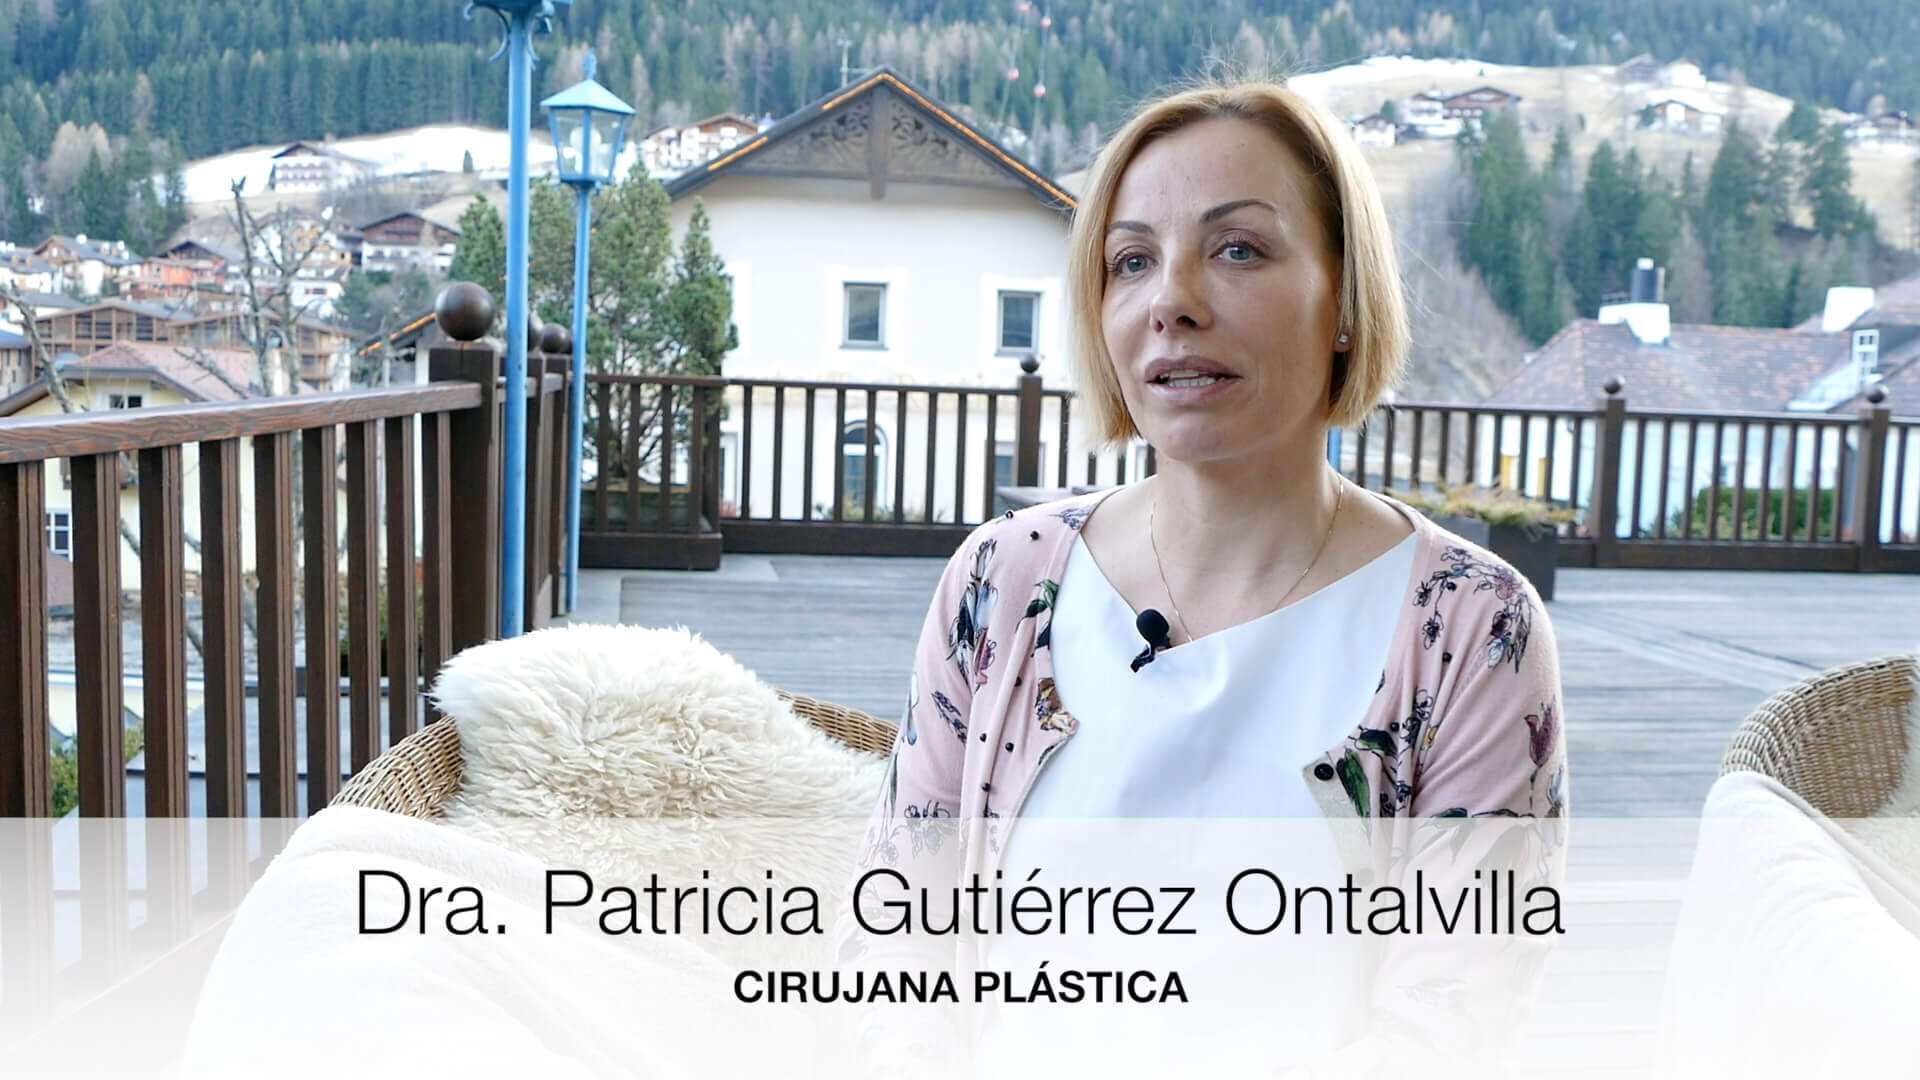 Resumen de la Conferencia Lipofilling en Mamas Tuberosas de la Dra. Patricia Gutiérrez Ontalvilla del pasado Marzo 2017 en el Tirol (Italia)